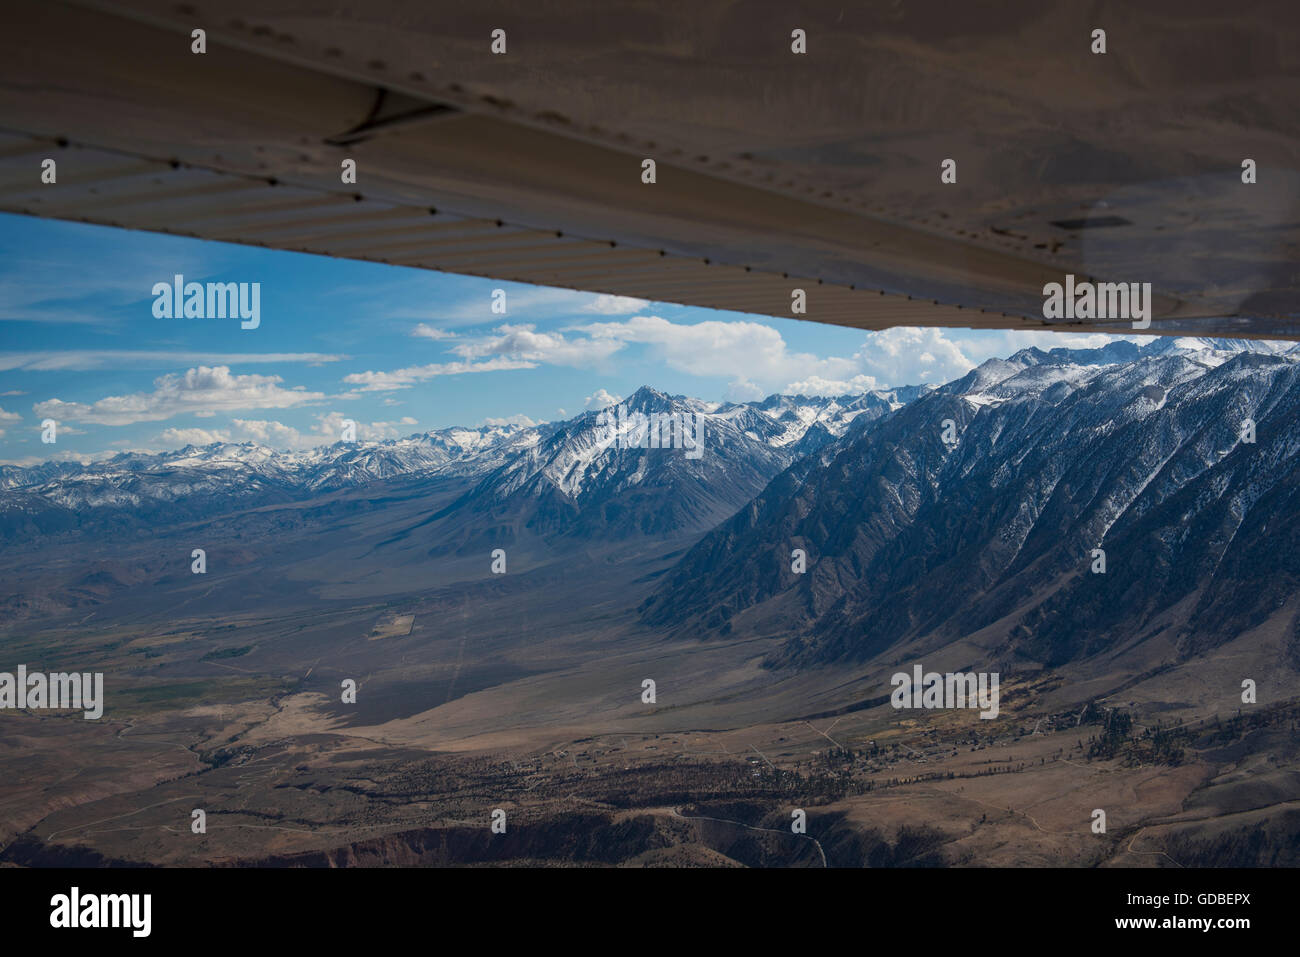 Luftaufnahme des Owens Valley in der Nähe von Bishop, CA. Blick nach Südwesten in Richtung Sierra Nevada Bergkette Stockfoto